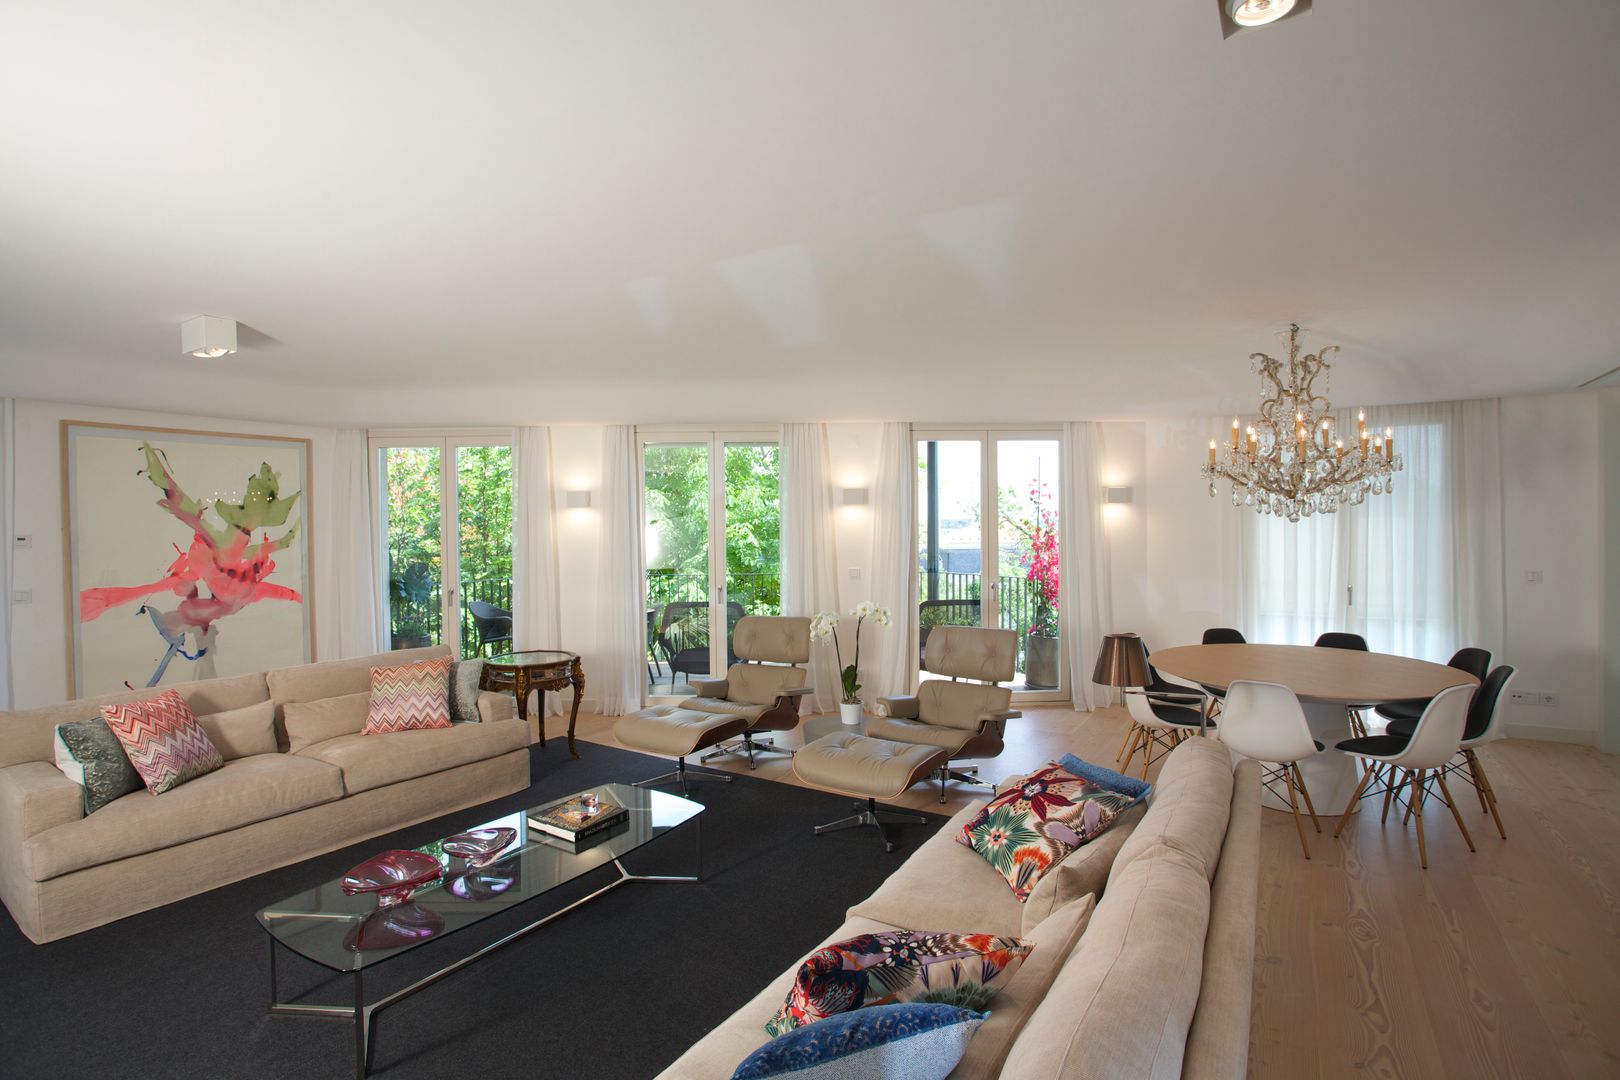 Uma atmosfera leve e colorida, Architect Your Home Architect Your Home Modern living room